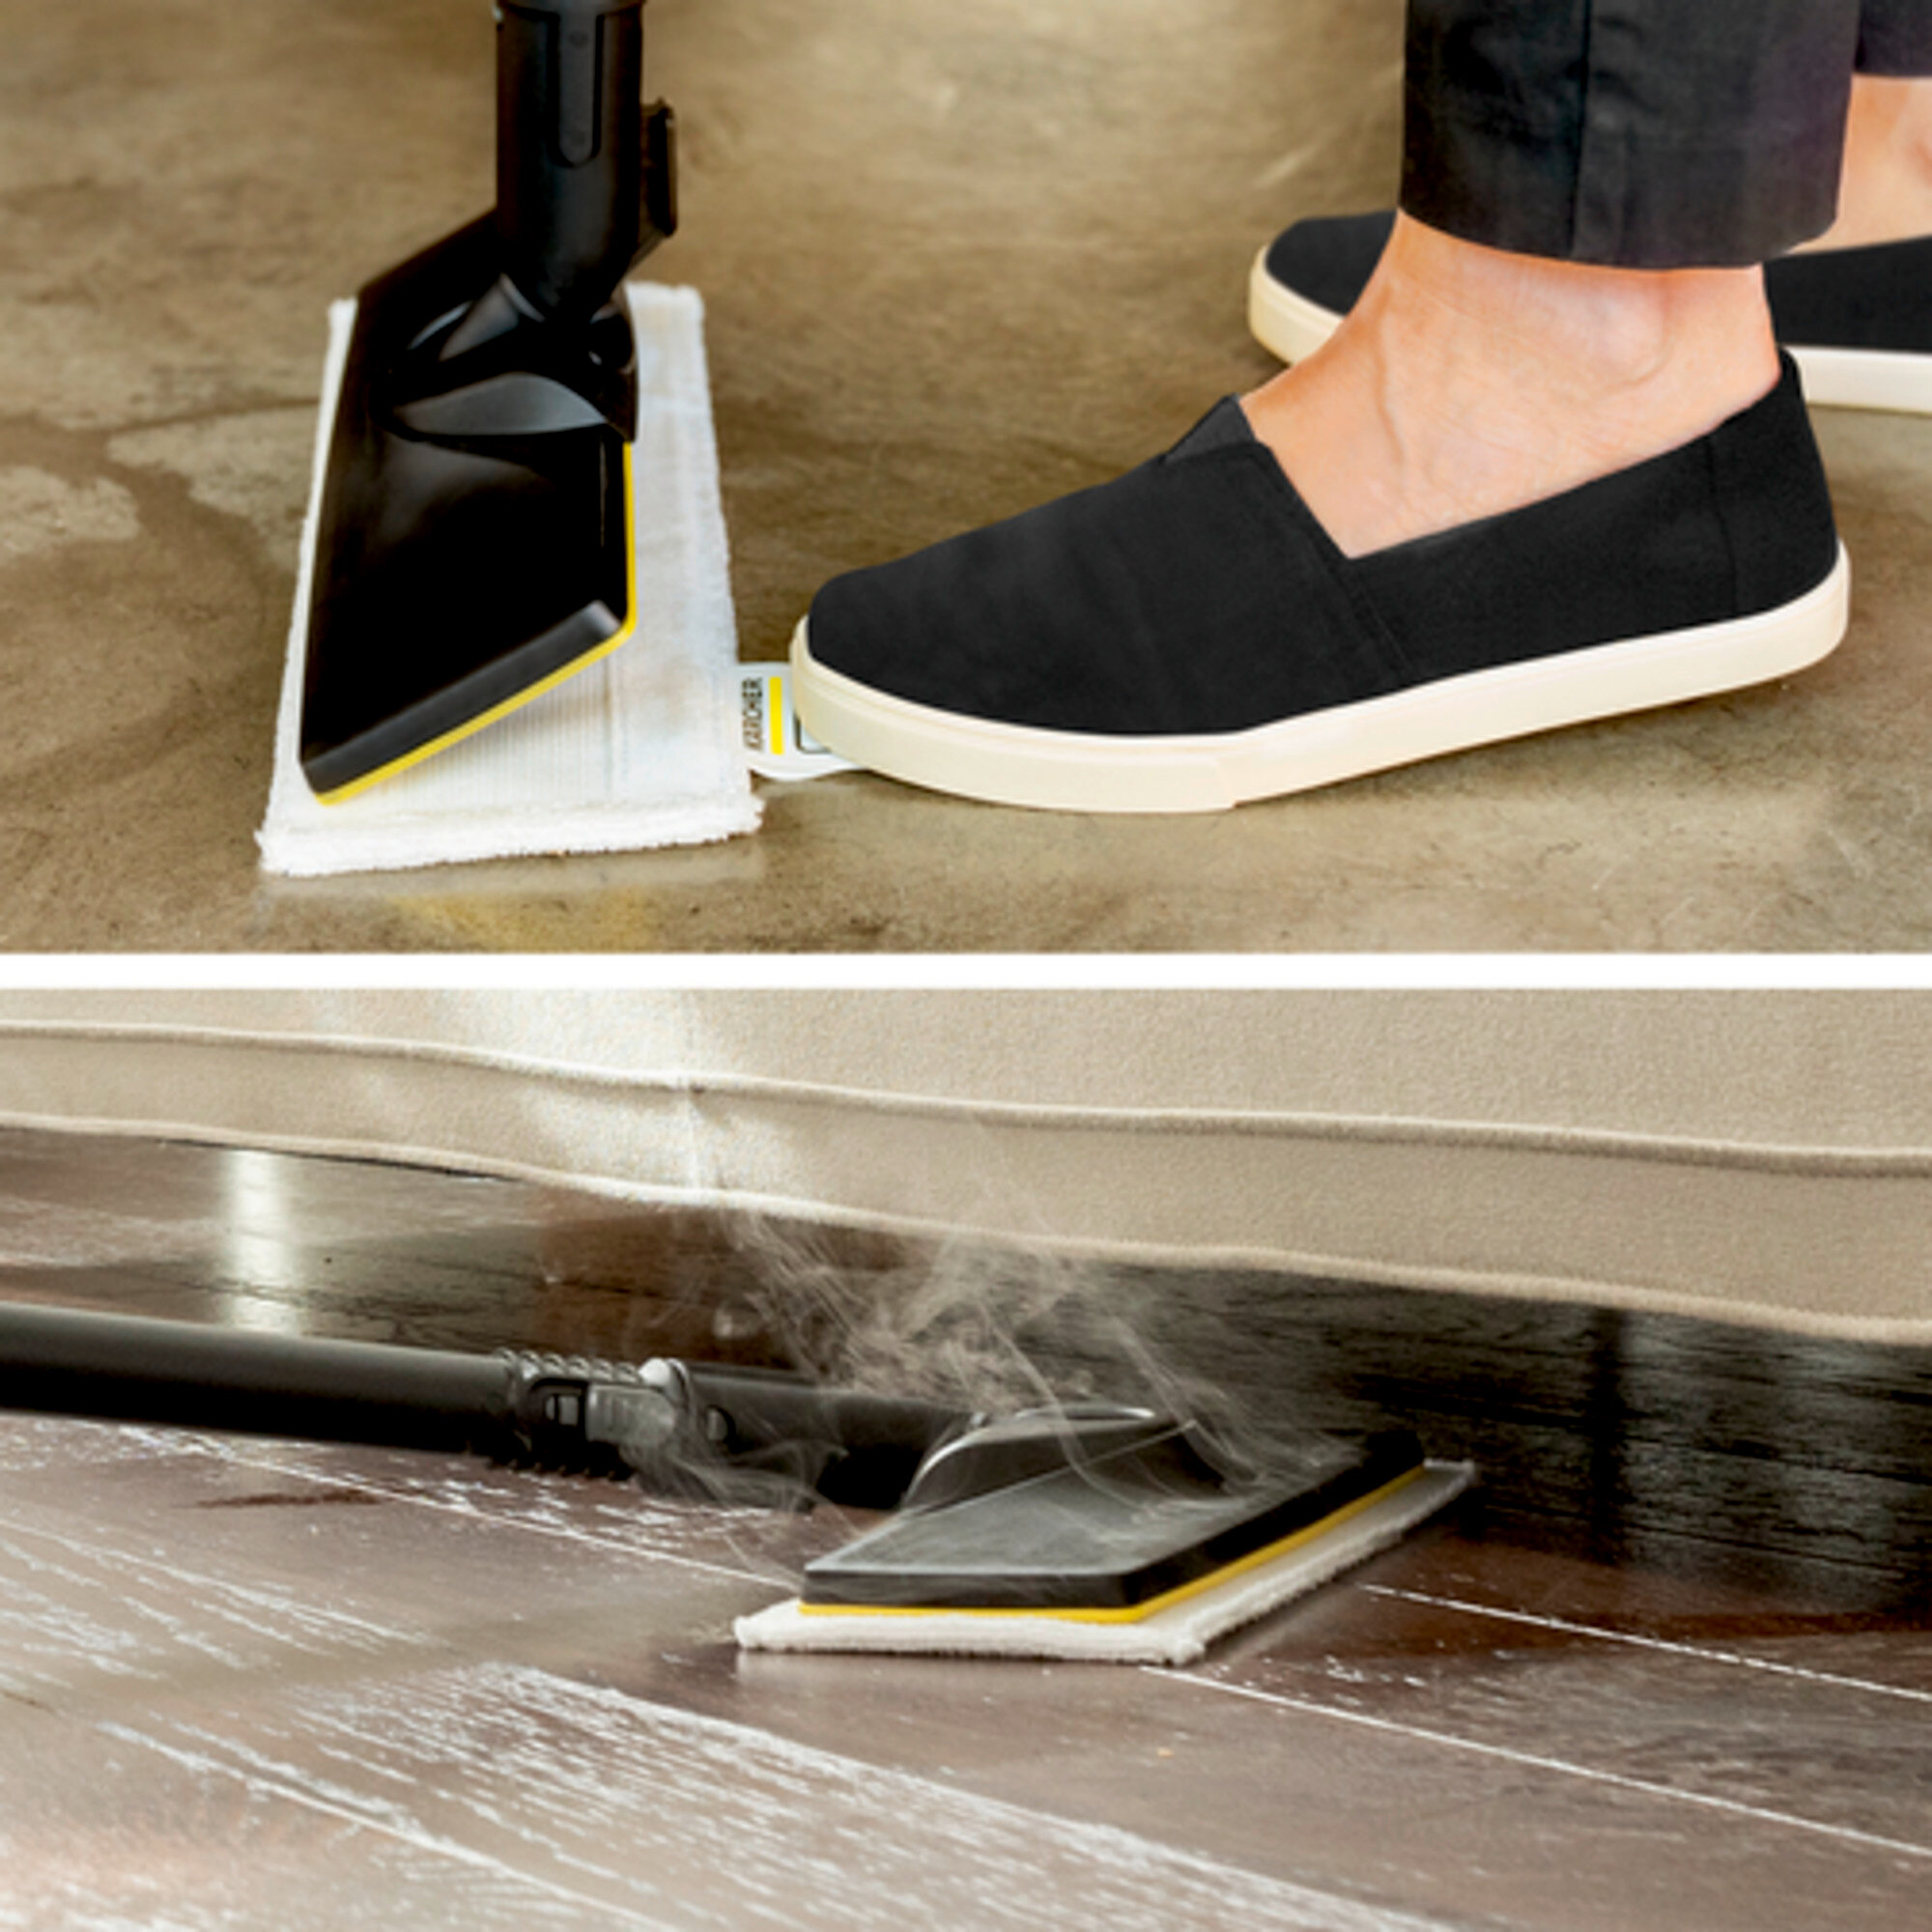 Parný čistič Parný čistič SC 2 Deluxe: Súprava na čistenie podlahy EasyFix s flexibilným kĺbom na podlahovej hubici a pohodlným suchým zipsom na upevnenie utierky na podlahu